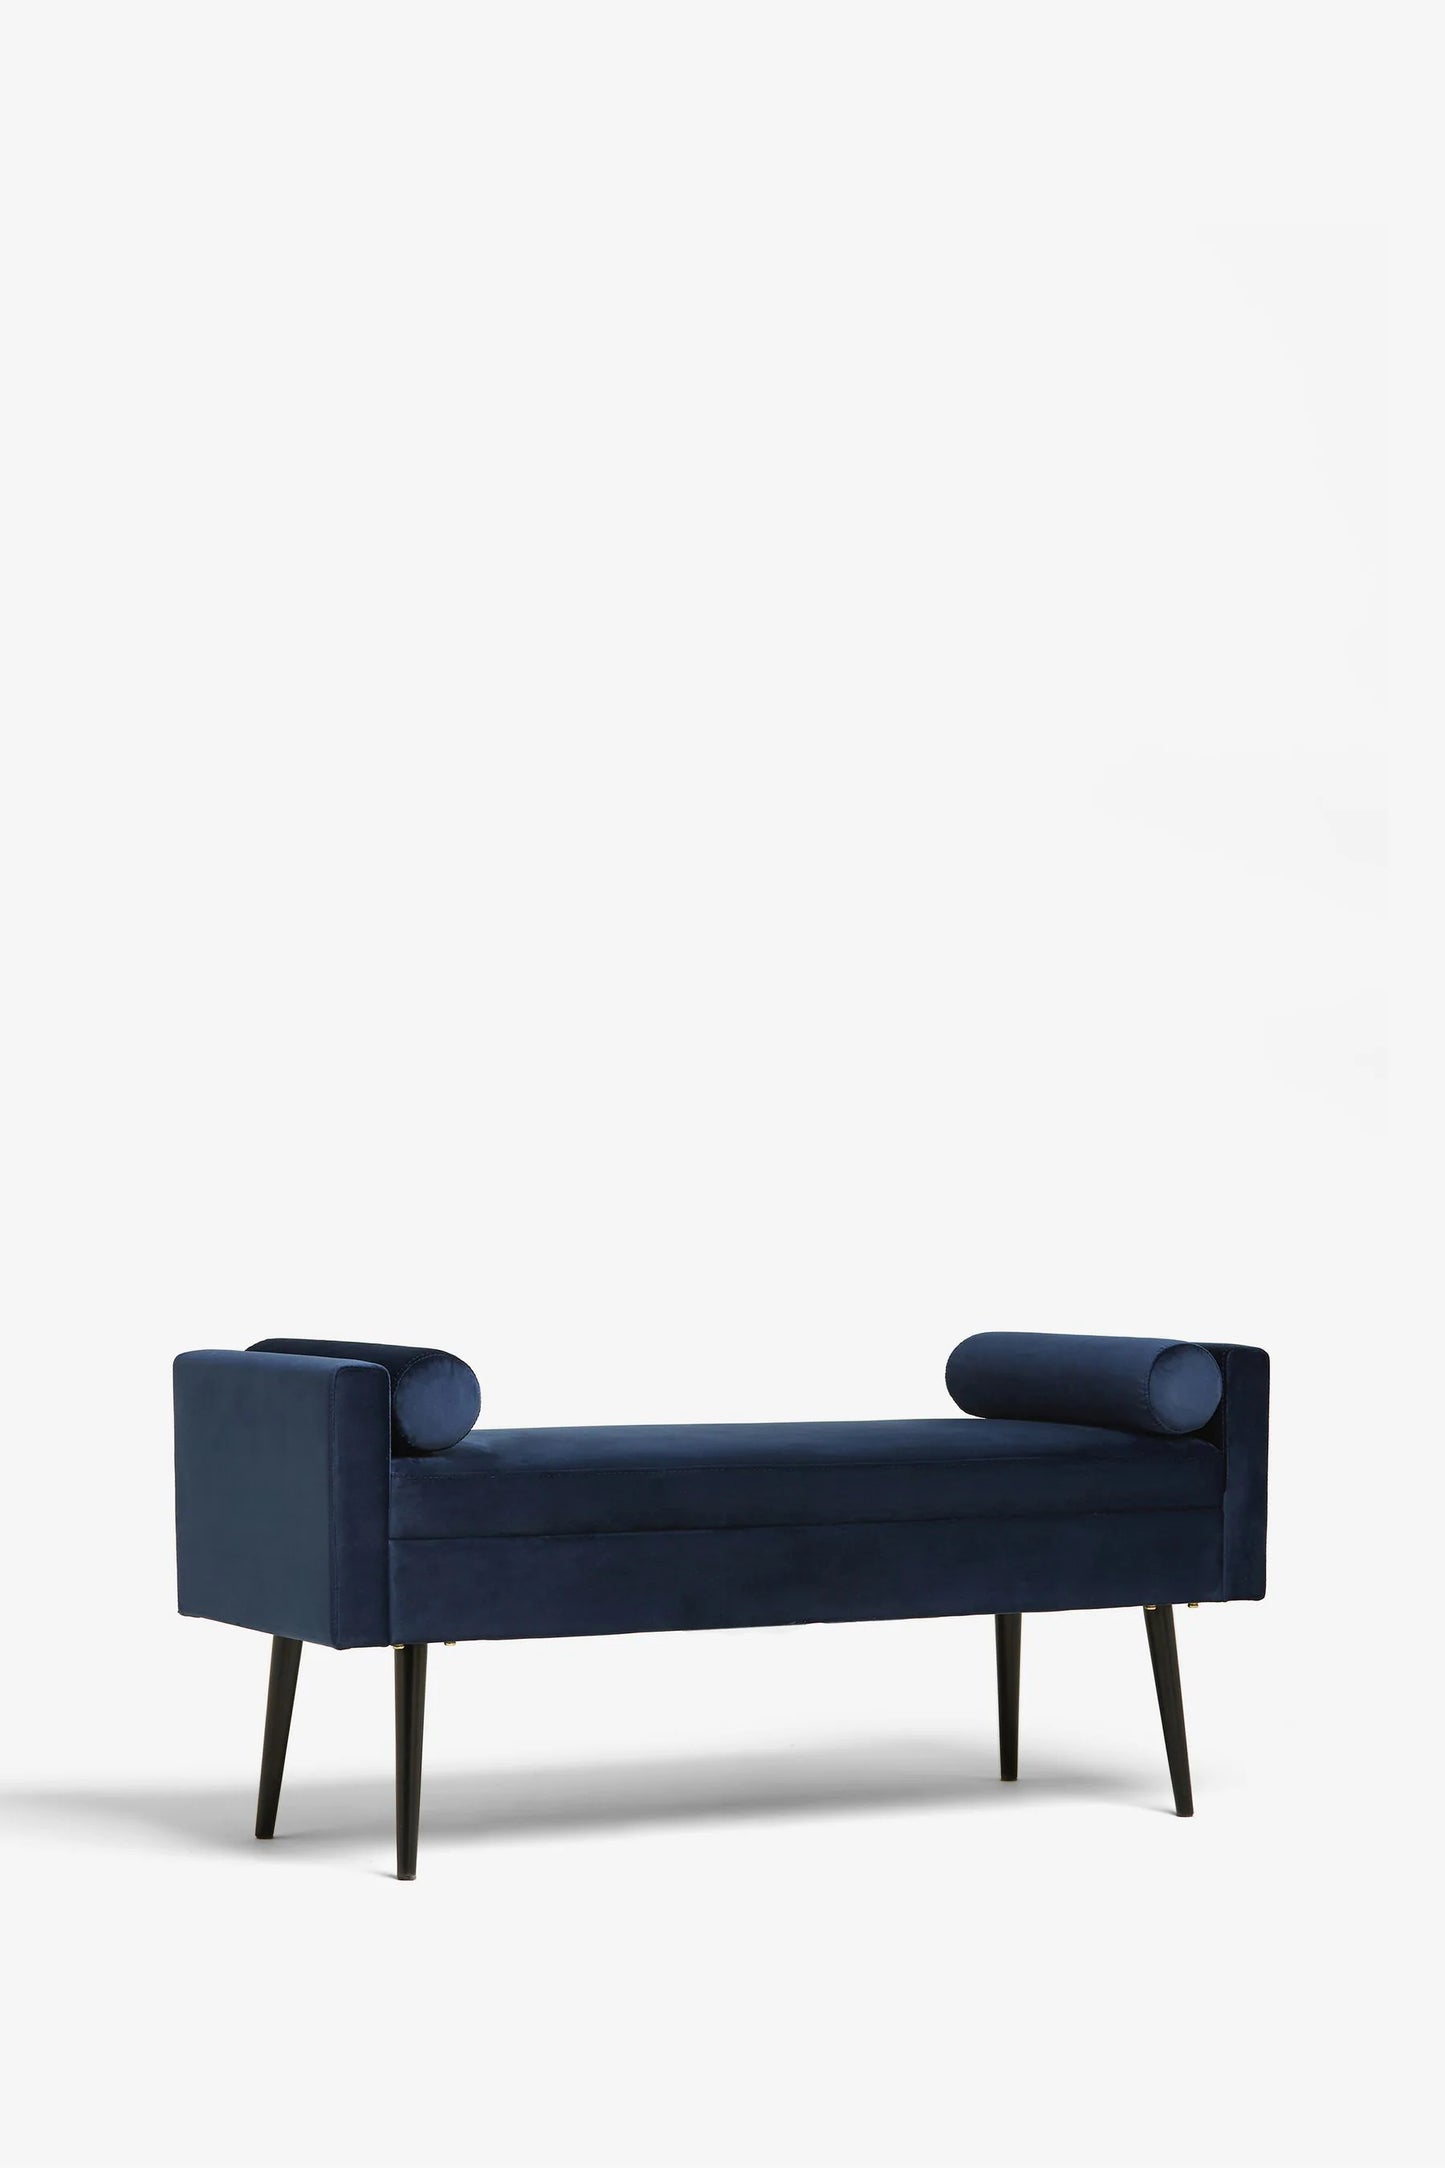 Rosiee Upholstered Ottoman Bench - Velvet Navy Blue